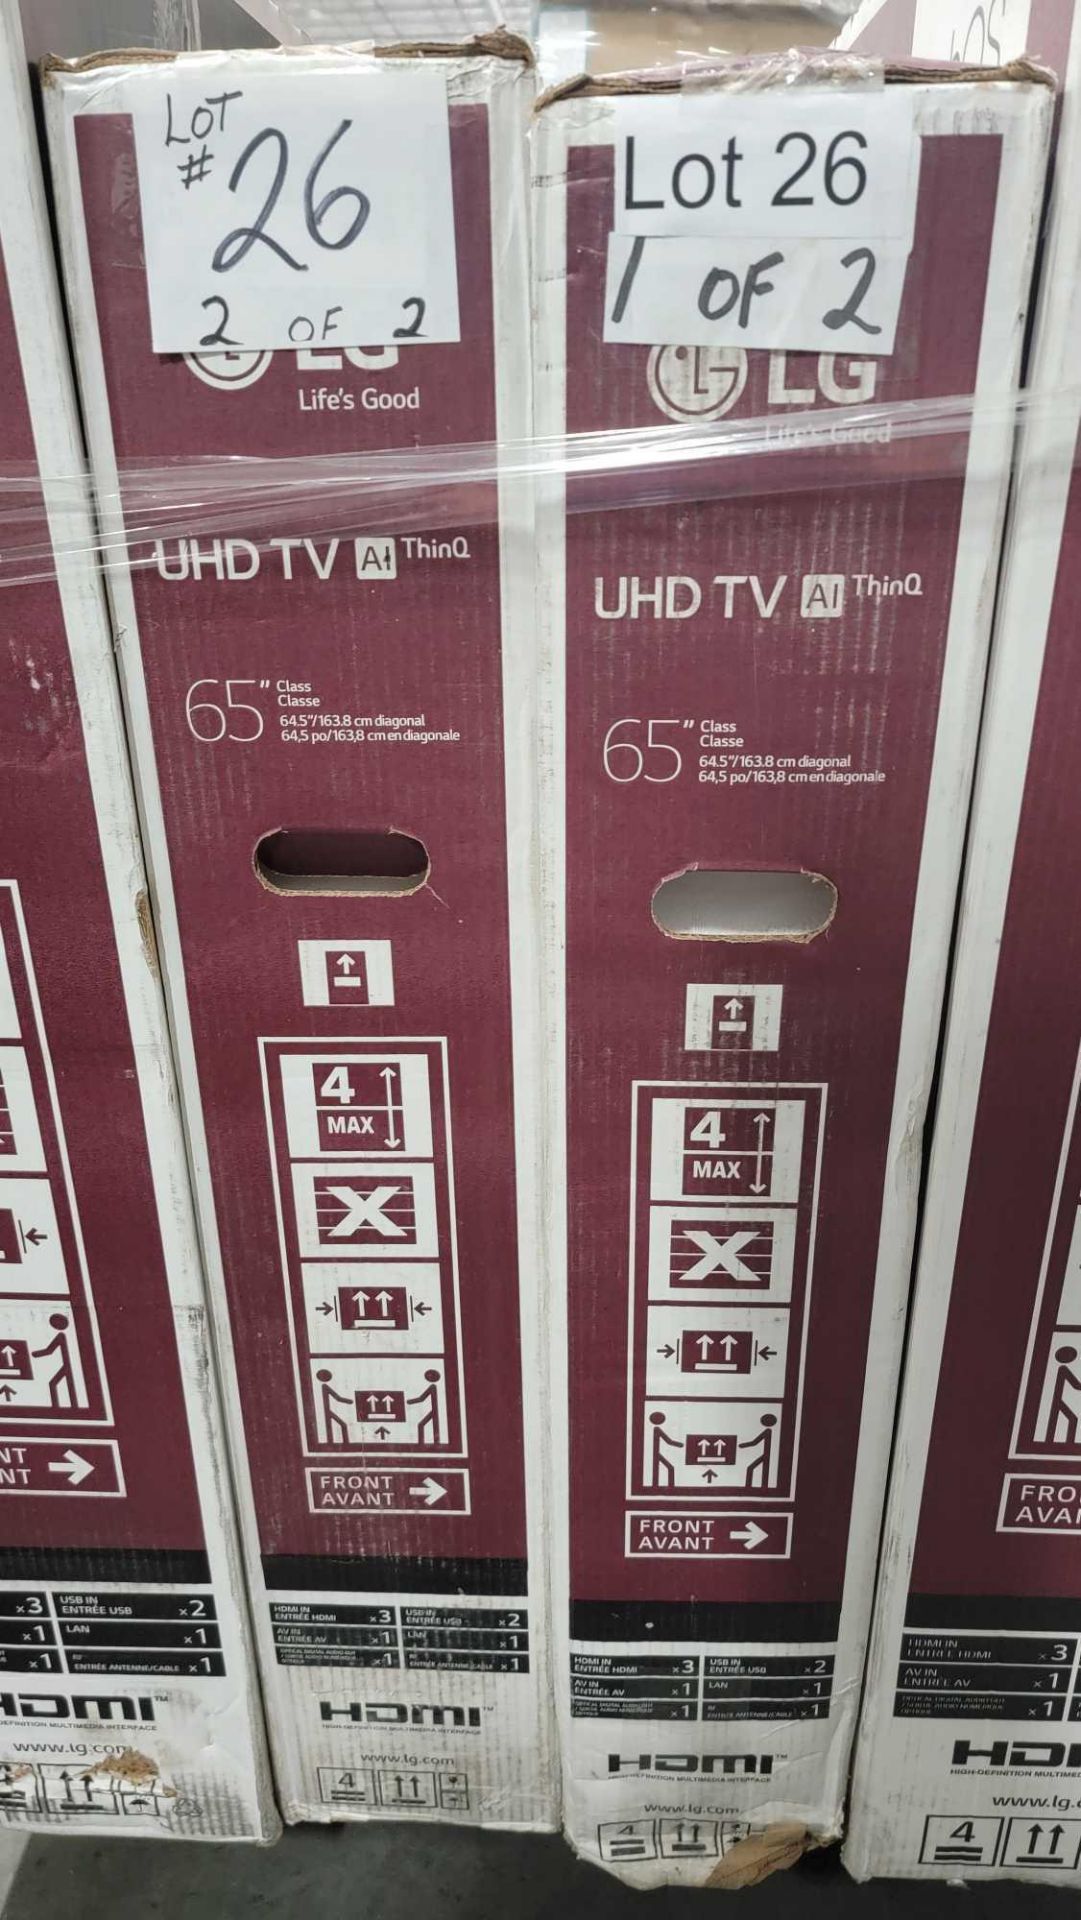 Two LG TVs